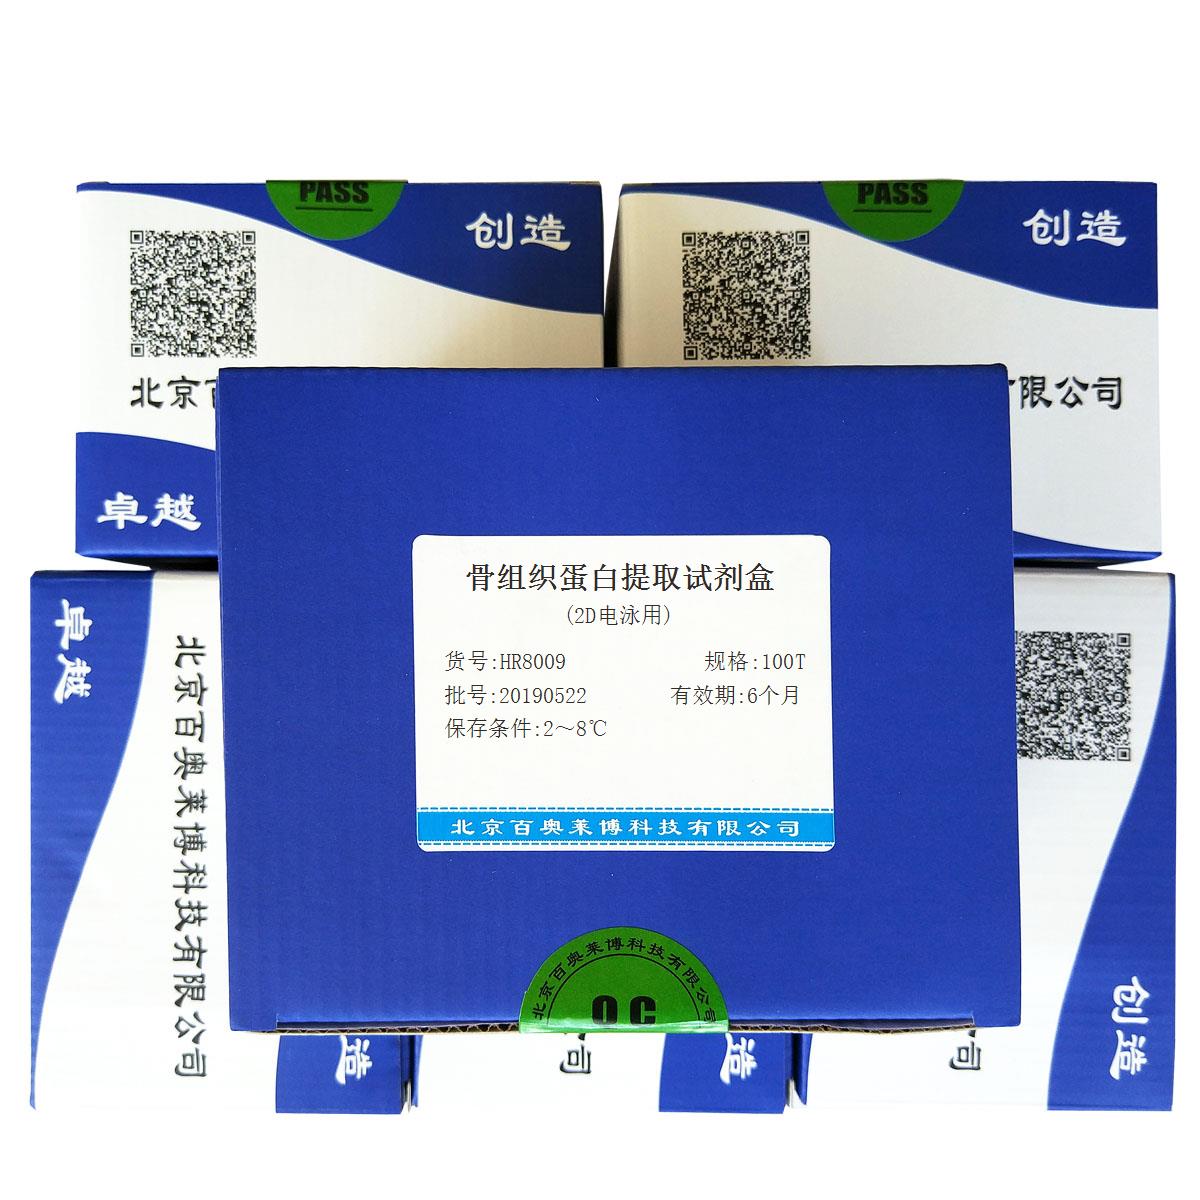 骨组织蛋白提取试剂盒(2D电泳用)北京供应商